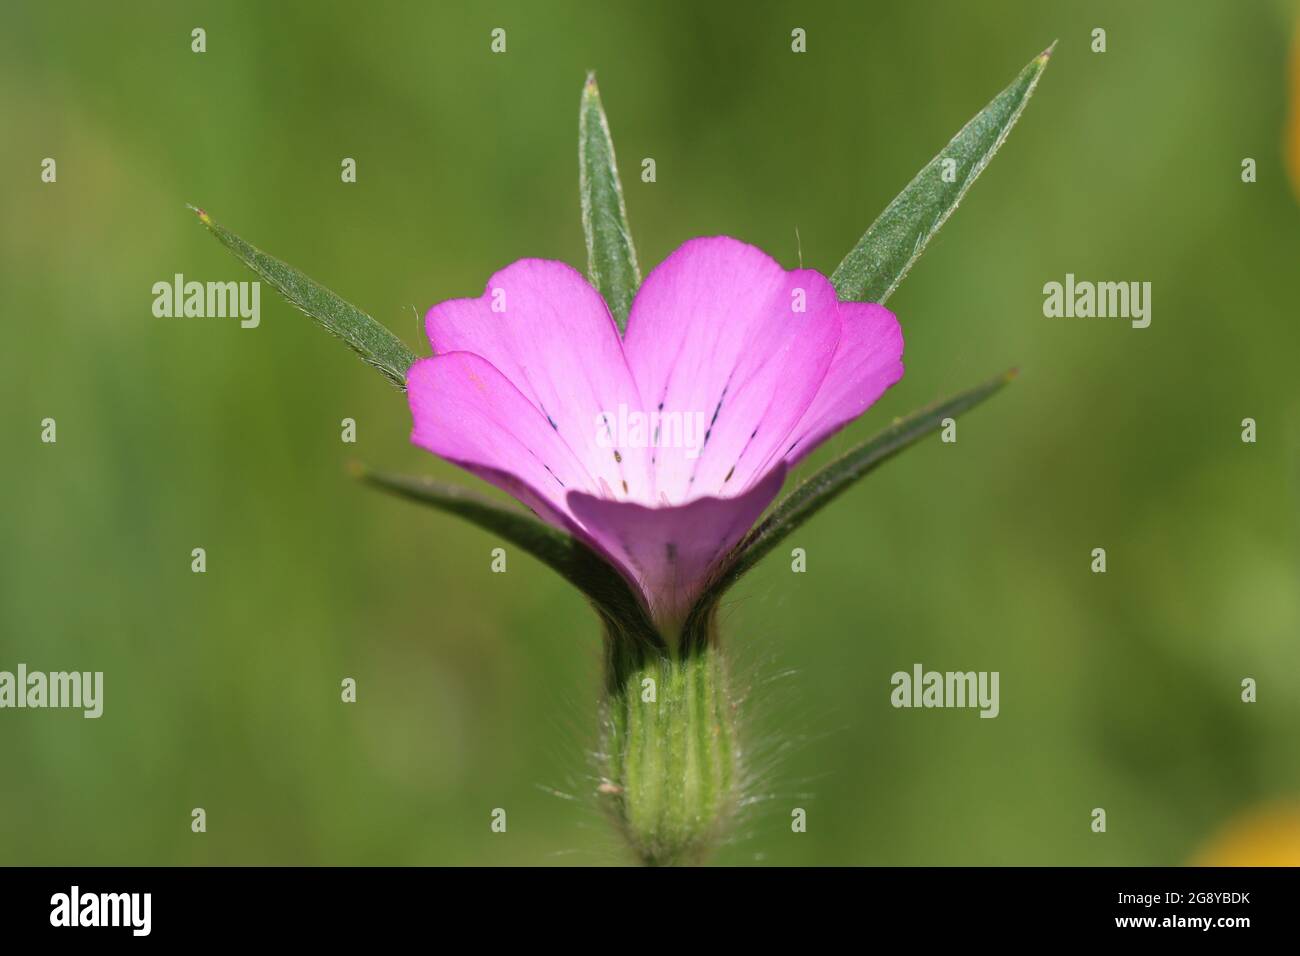 close-up of a conrade flower Stock Photo